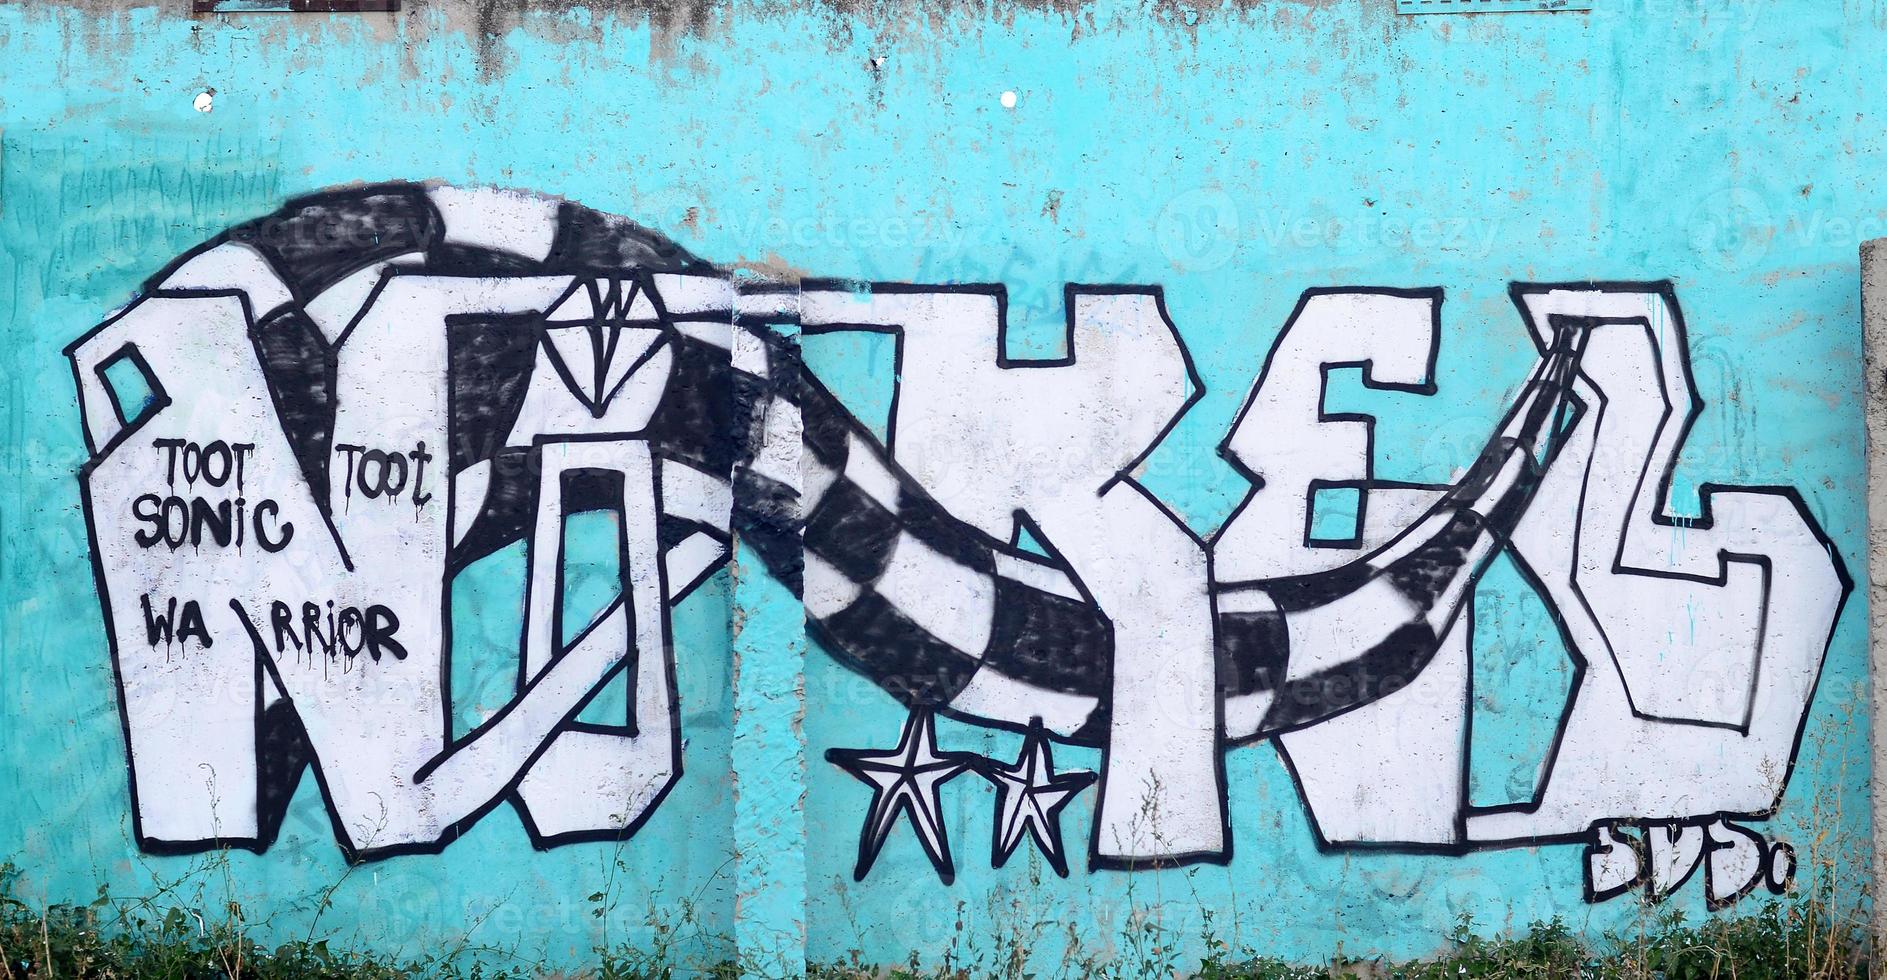 imagem de fundo de uma parede de concreto com um pedaço de padrão de graffiti abstrato. arte de rua, vandalismo e passatempos juvenis foto